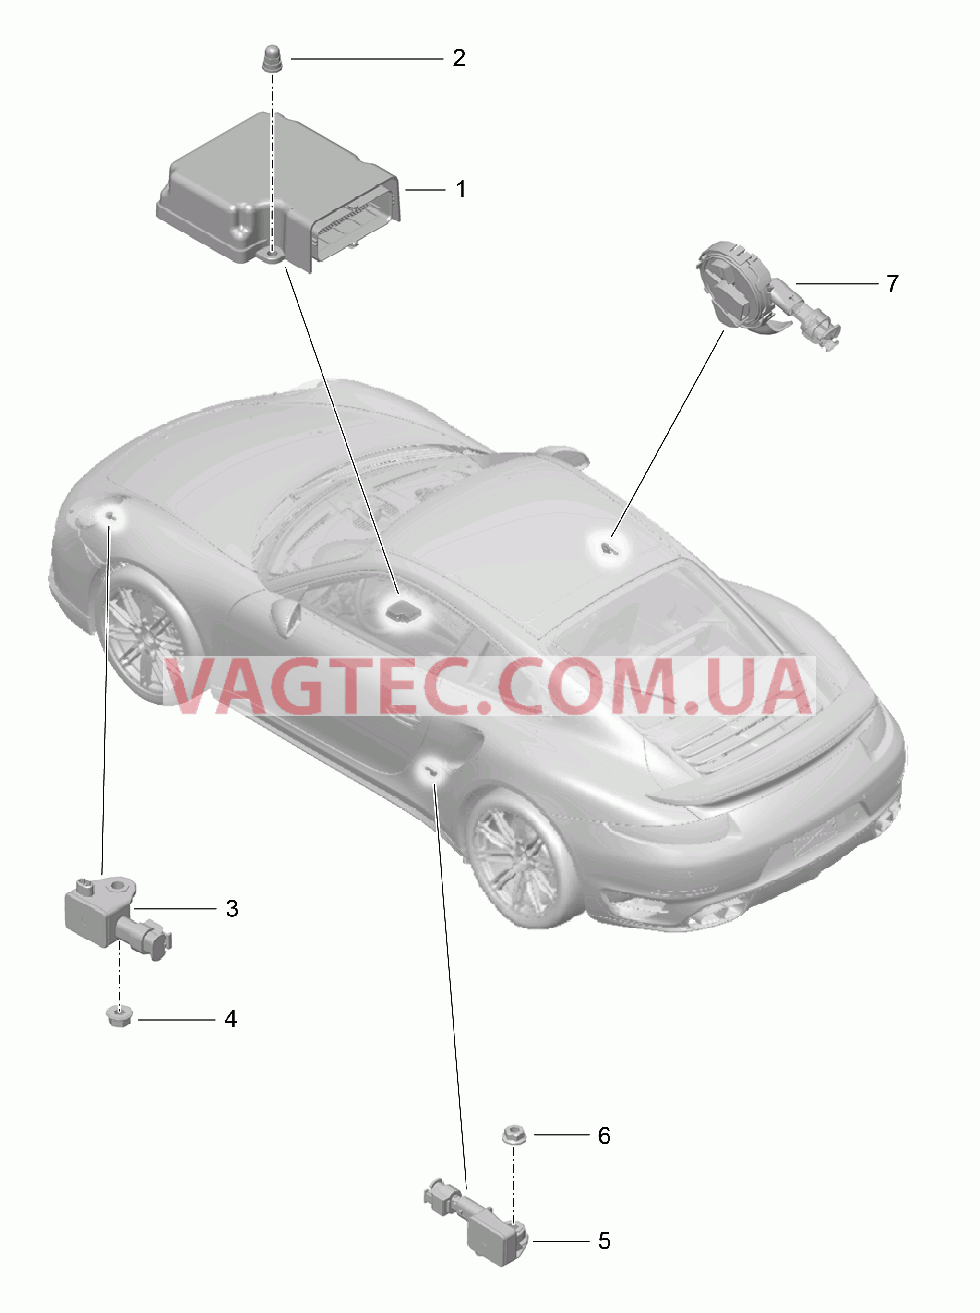 901-005 Блок управления, Датчик, Подушка безопасности для PORSCHE Porsche991Turbo 2014-2017